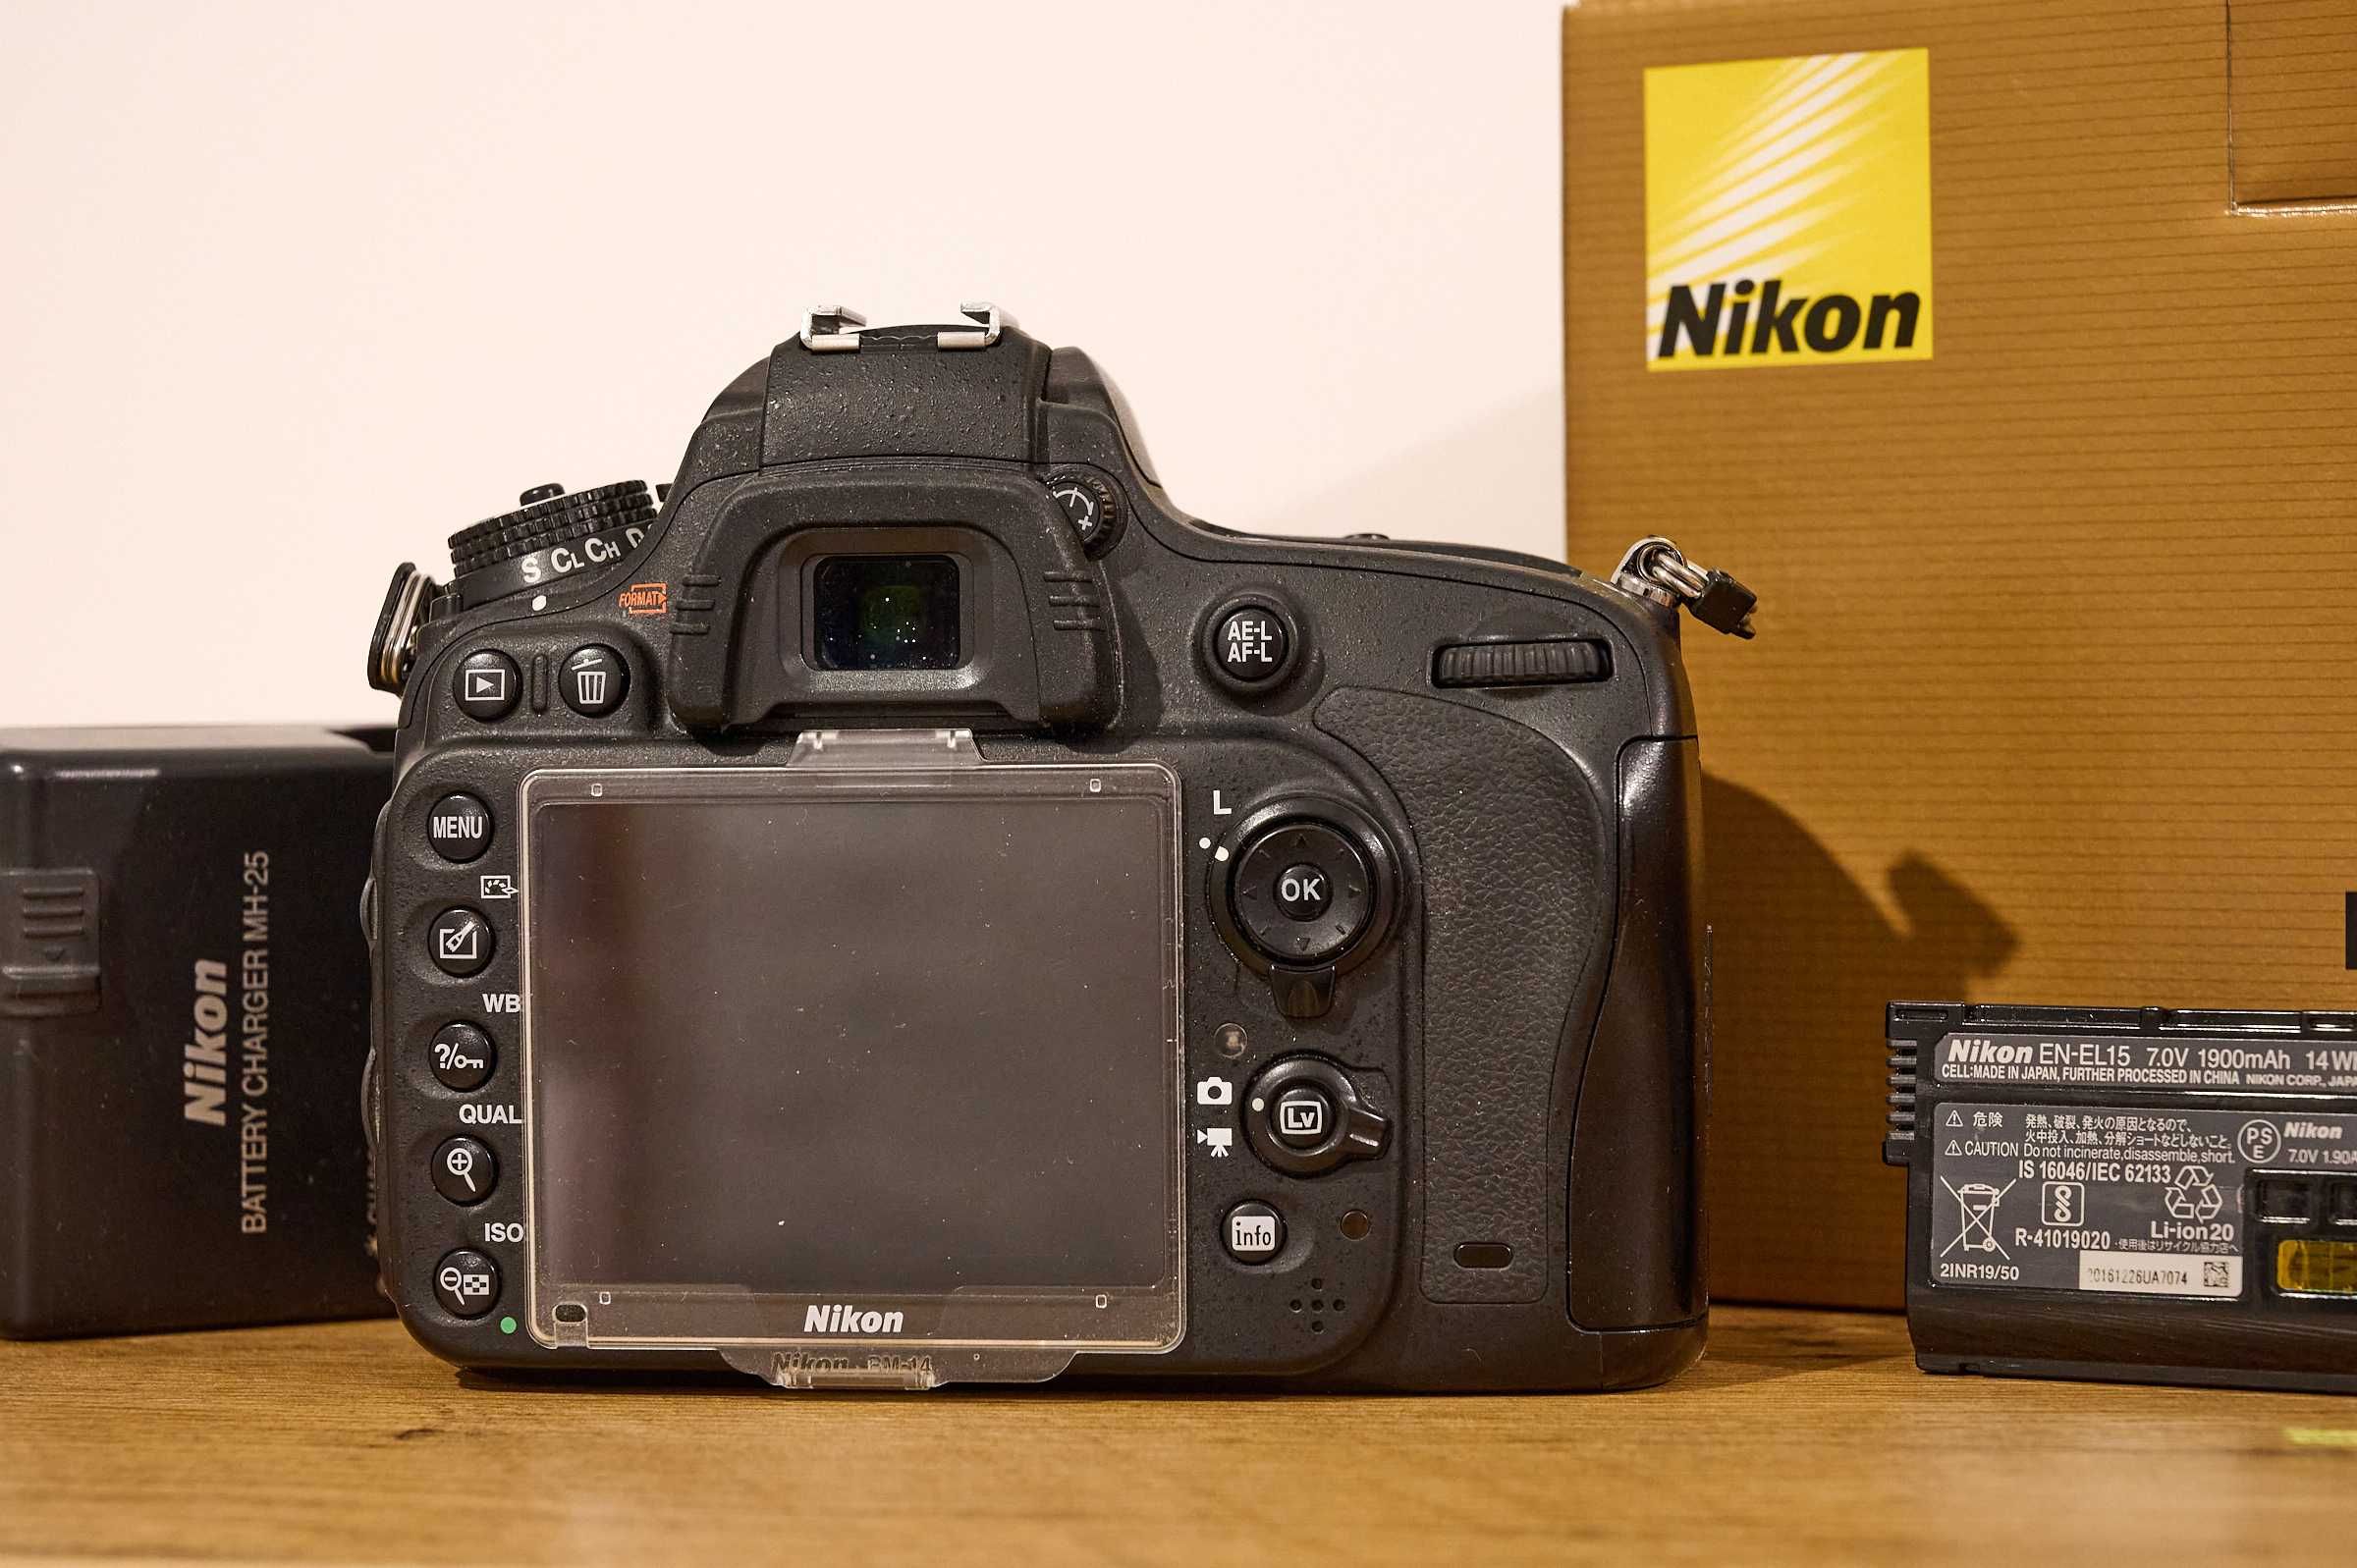 Nikon D610 - Body